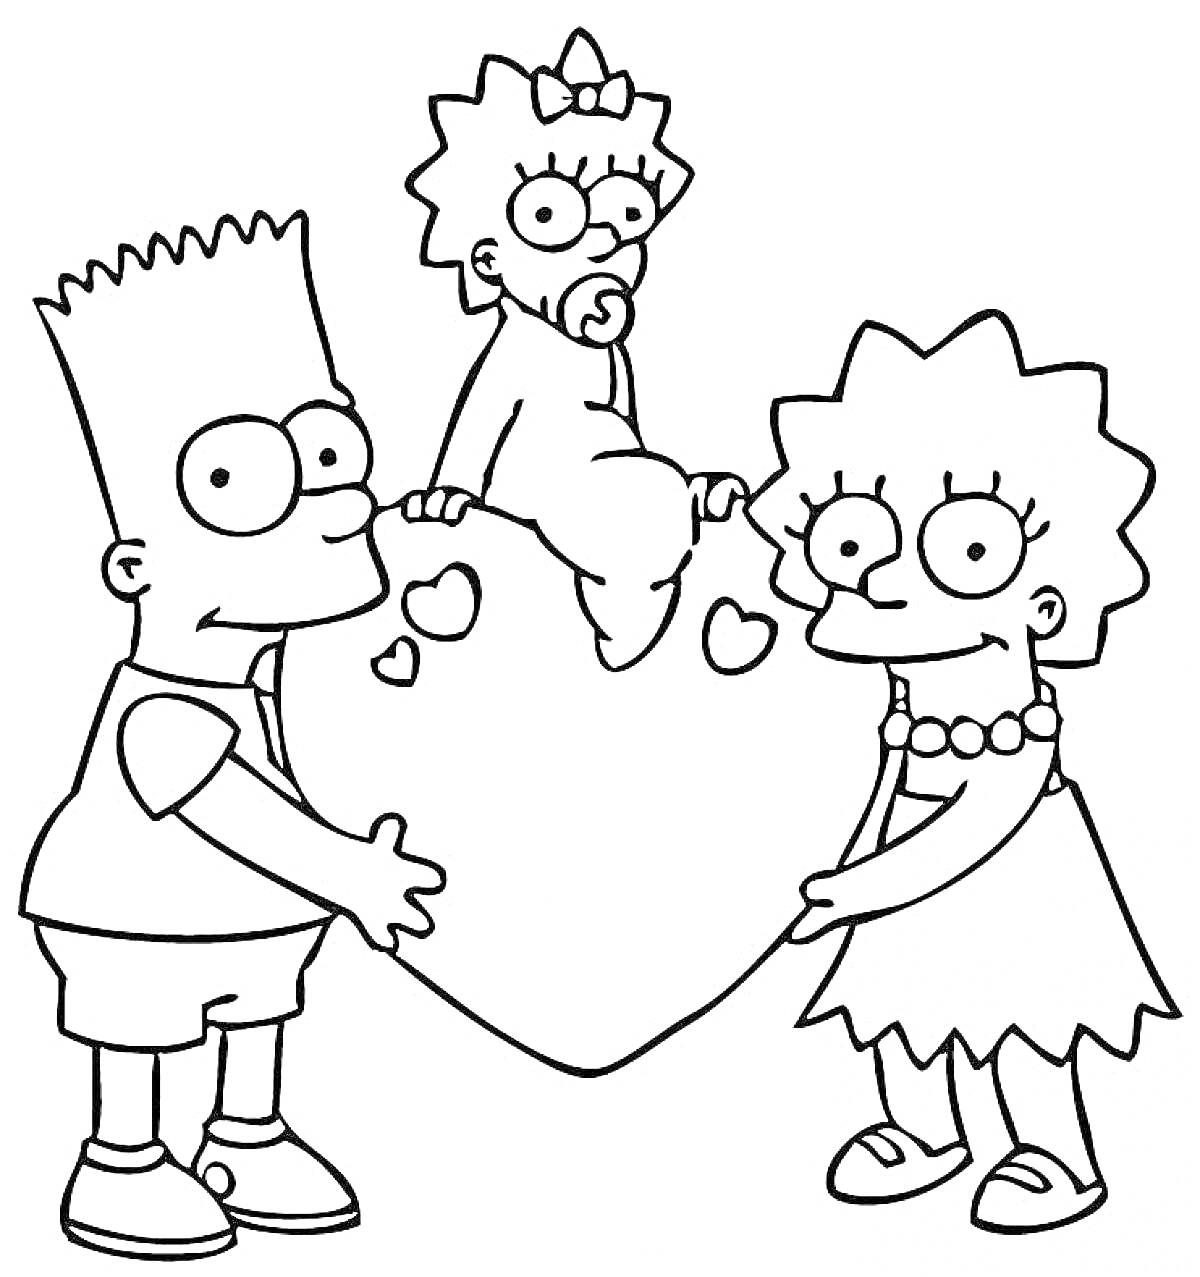 Раскраска Дети из Симпсонов: мальчик, девочка и младенец, держат большое сердце с маленькими сердцами